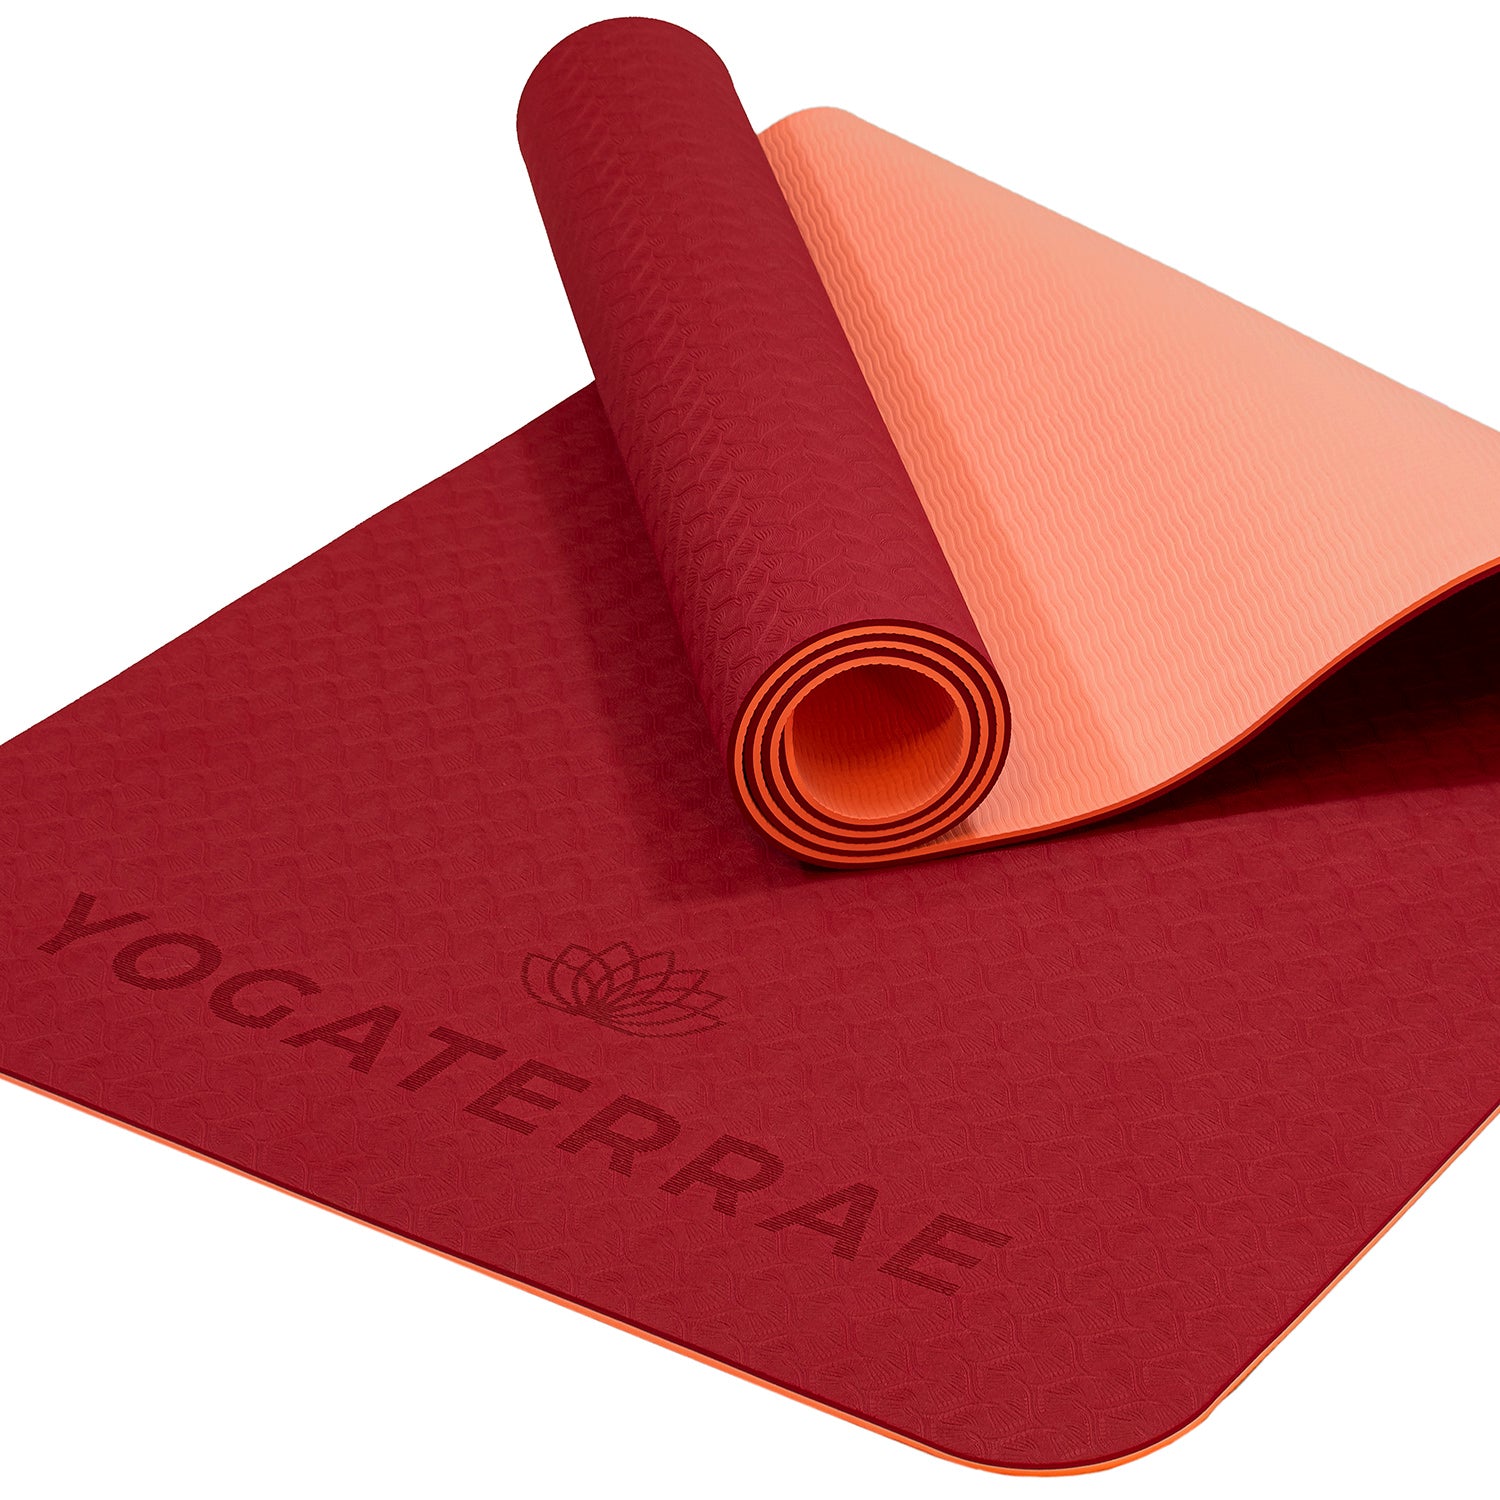 Tapis yoga antidérapant épais écologique TPE bordeaux + sac – YOGATERRAE